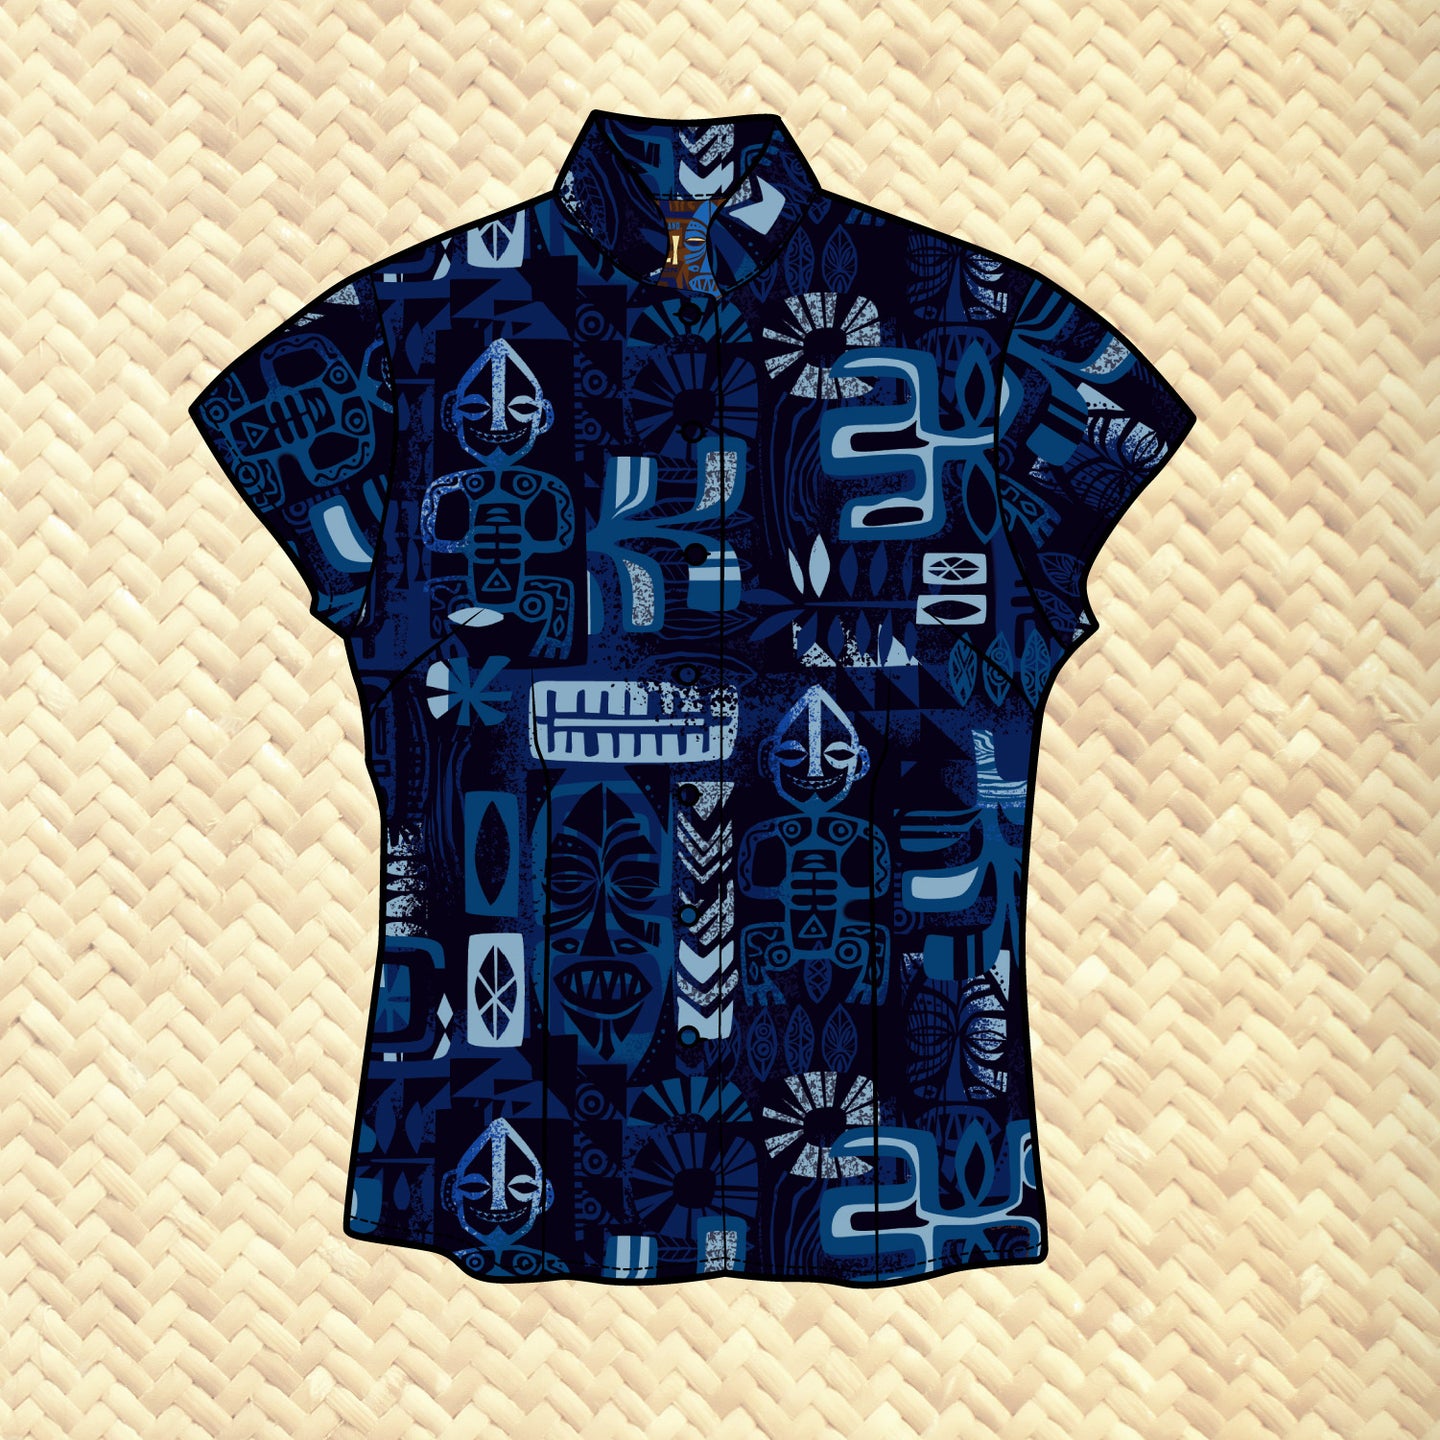 LAST CHANCE, TikiLand Trading Co. X Jeff Granito 'Kihei Shores' Womens Aloha Shirt